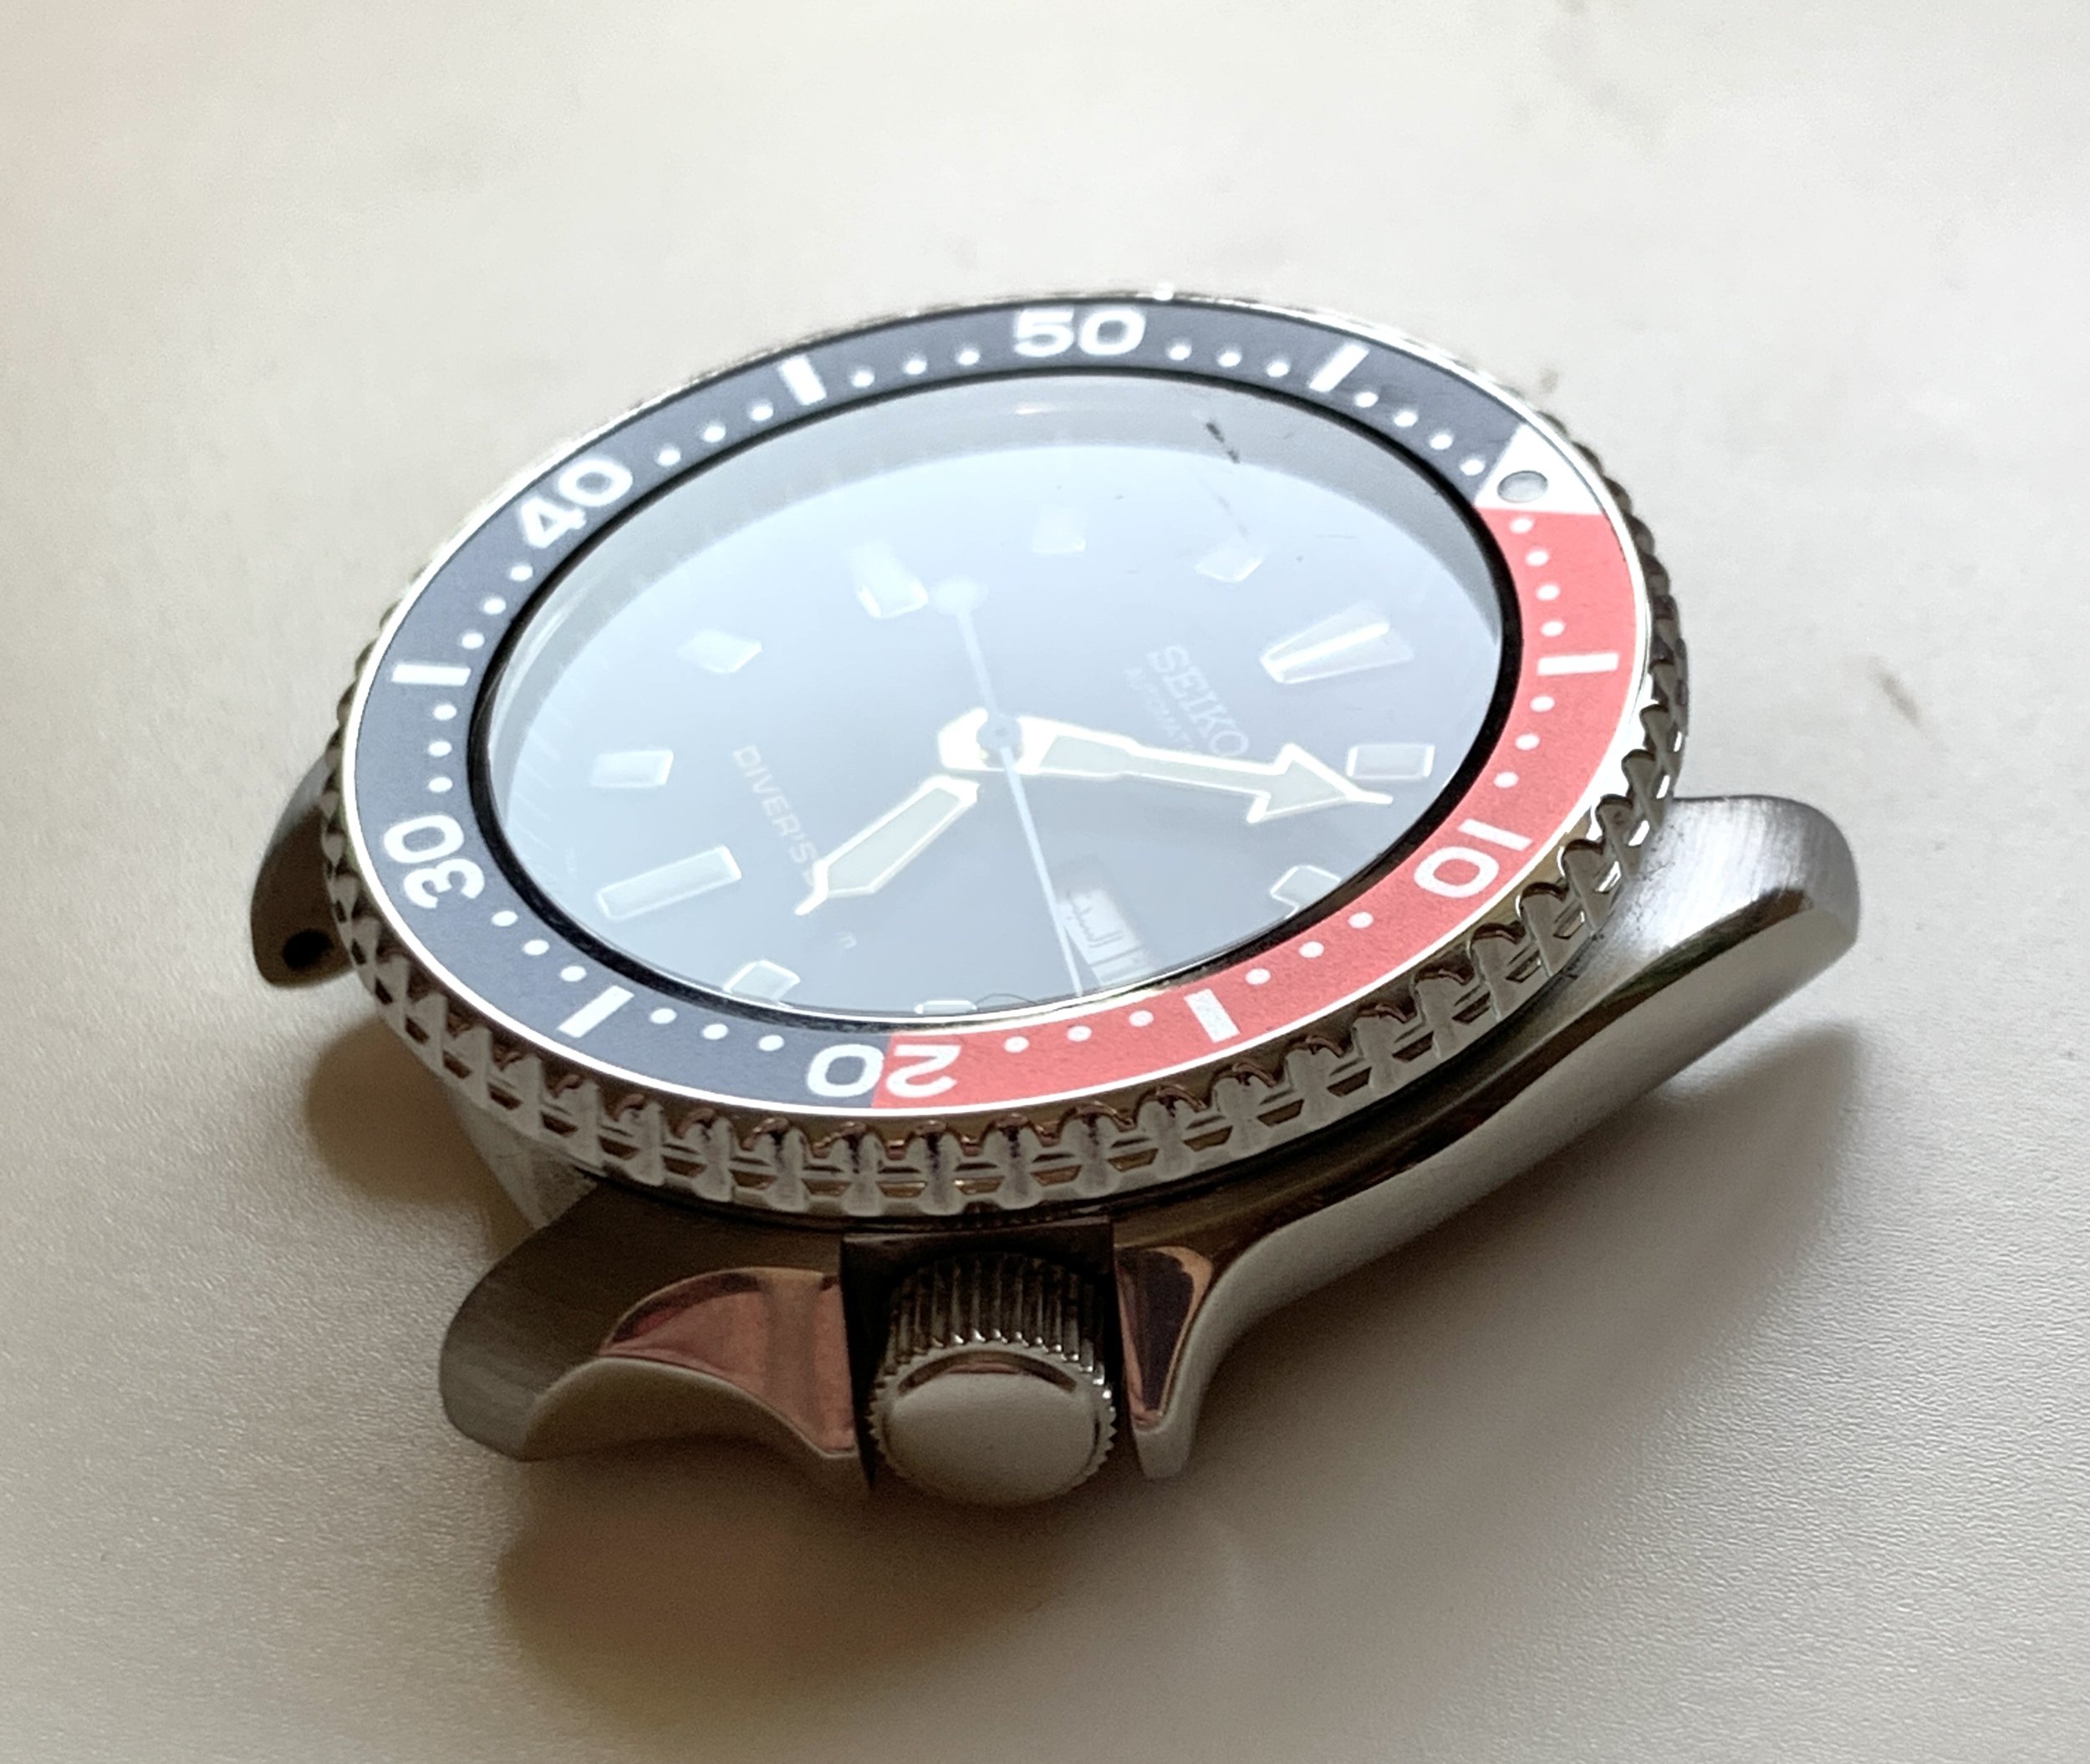 Seiko 7S26-0020 SKX401 from October 2009 — Klein Vintage Watch